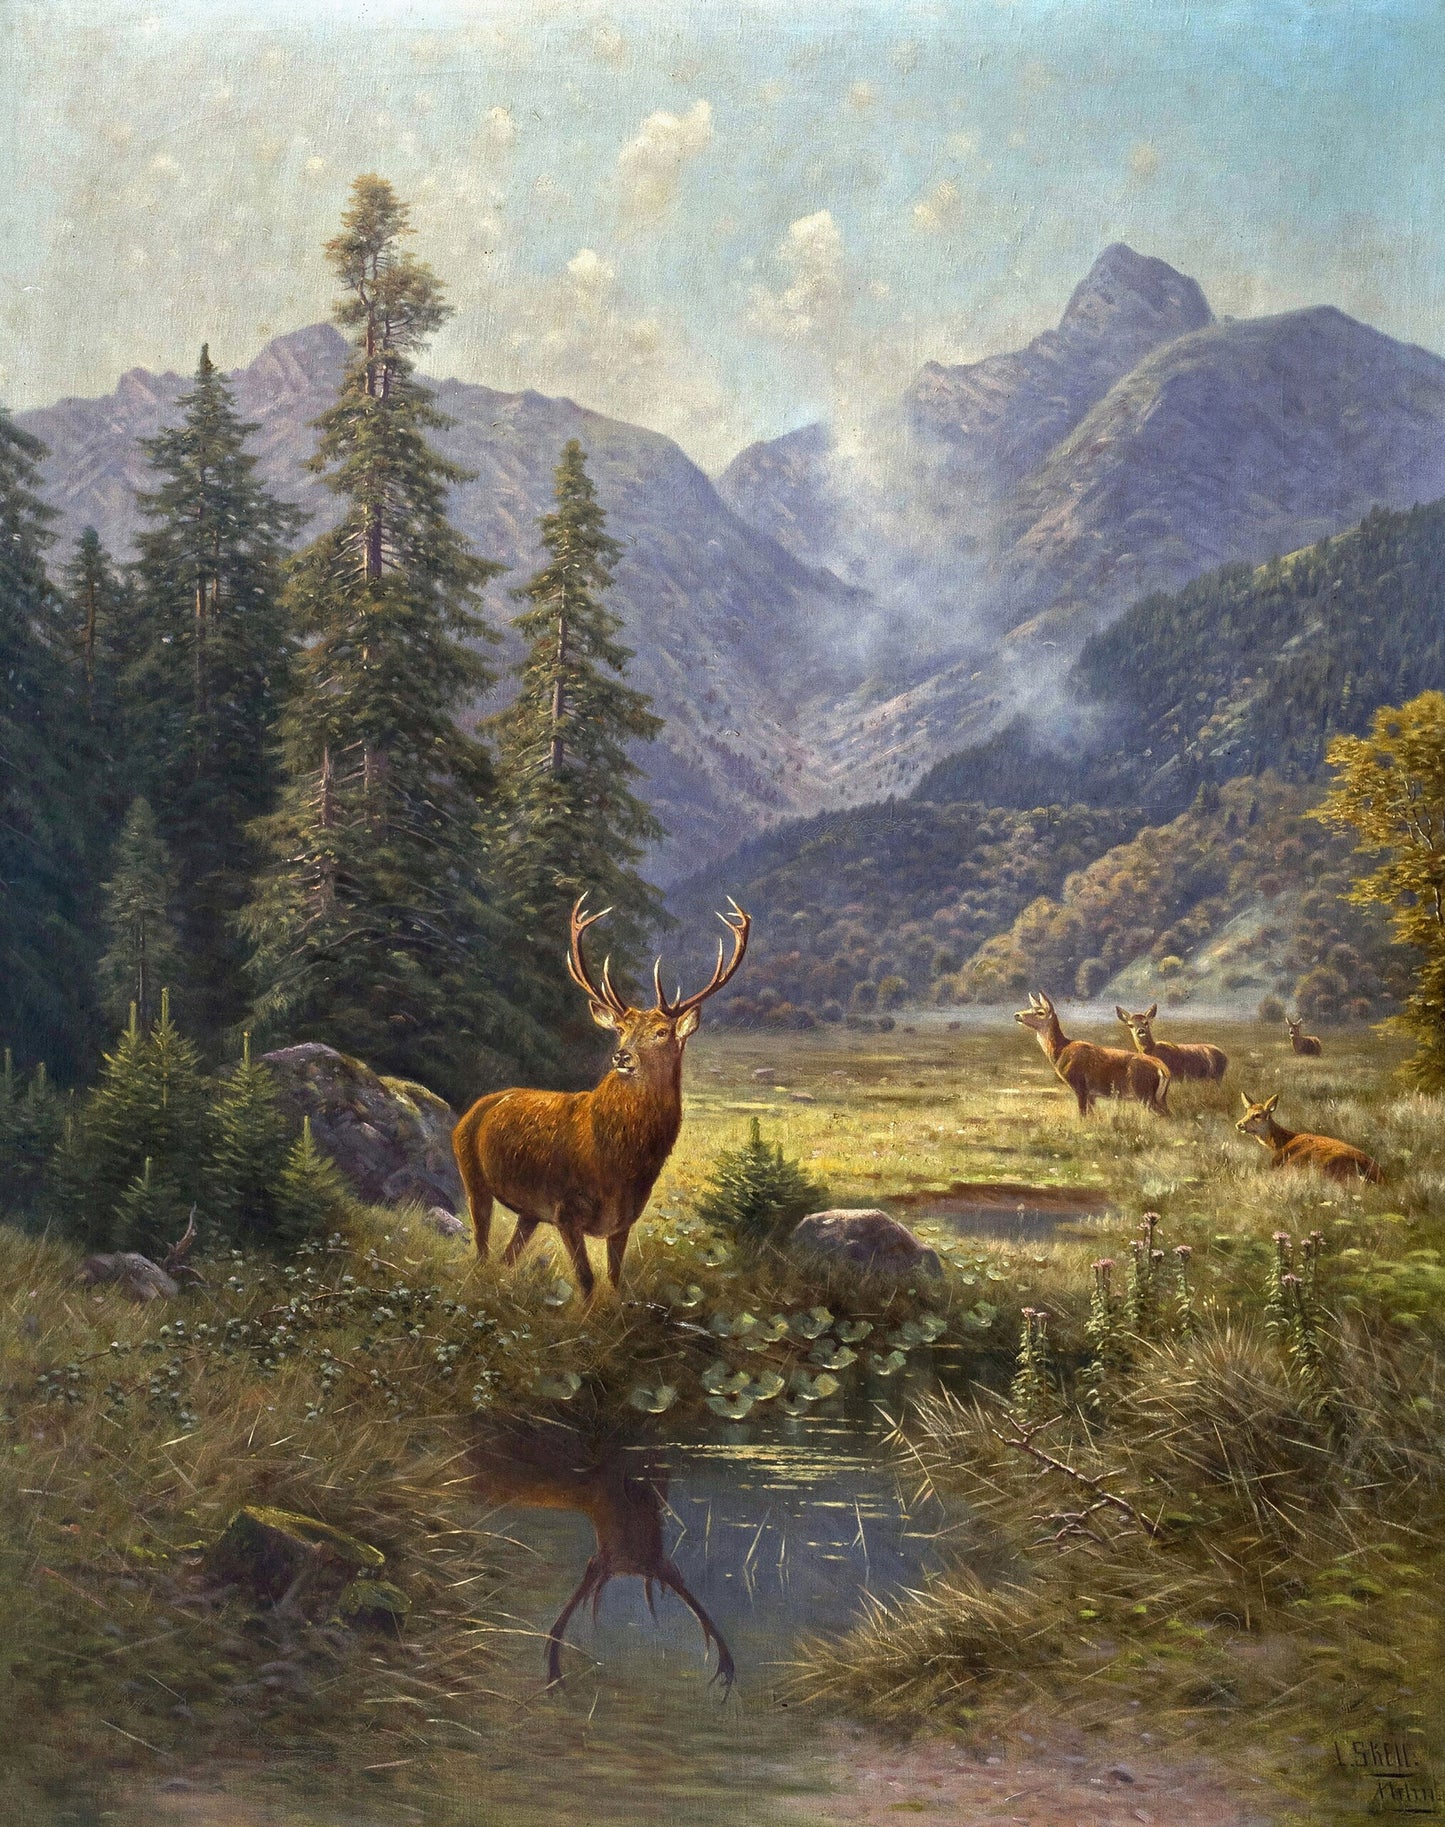 Wilhelm von Sckell Landscape Paintings [15 Images]